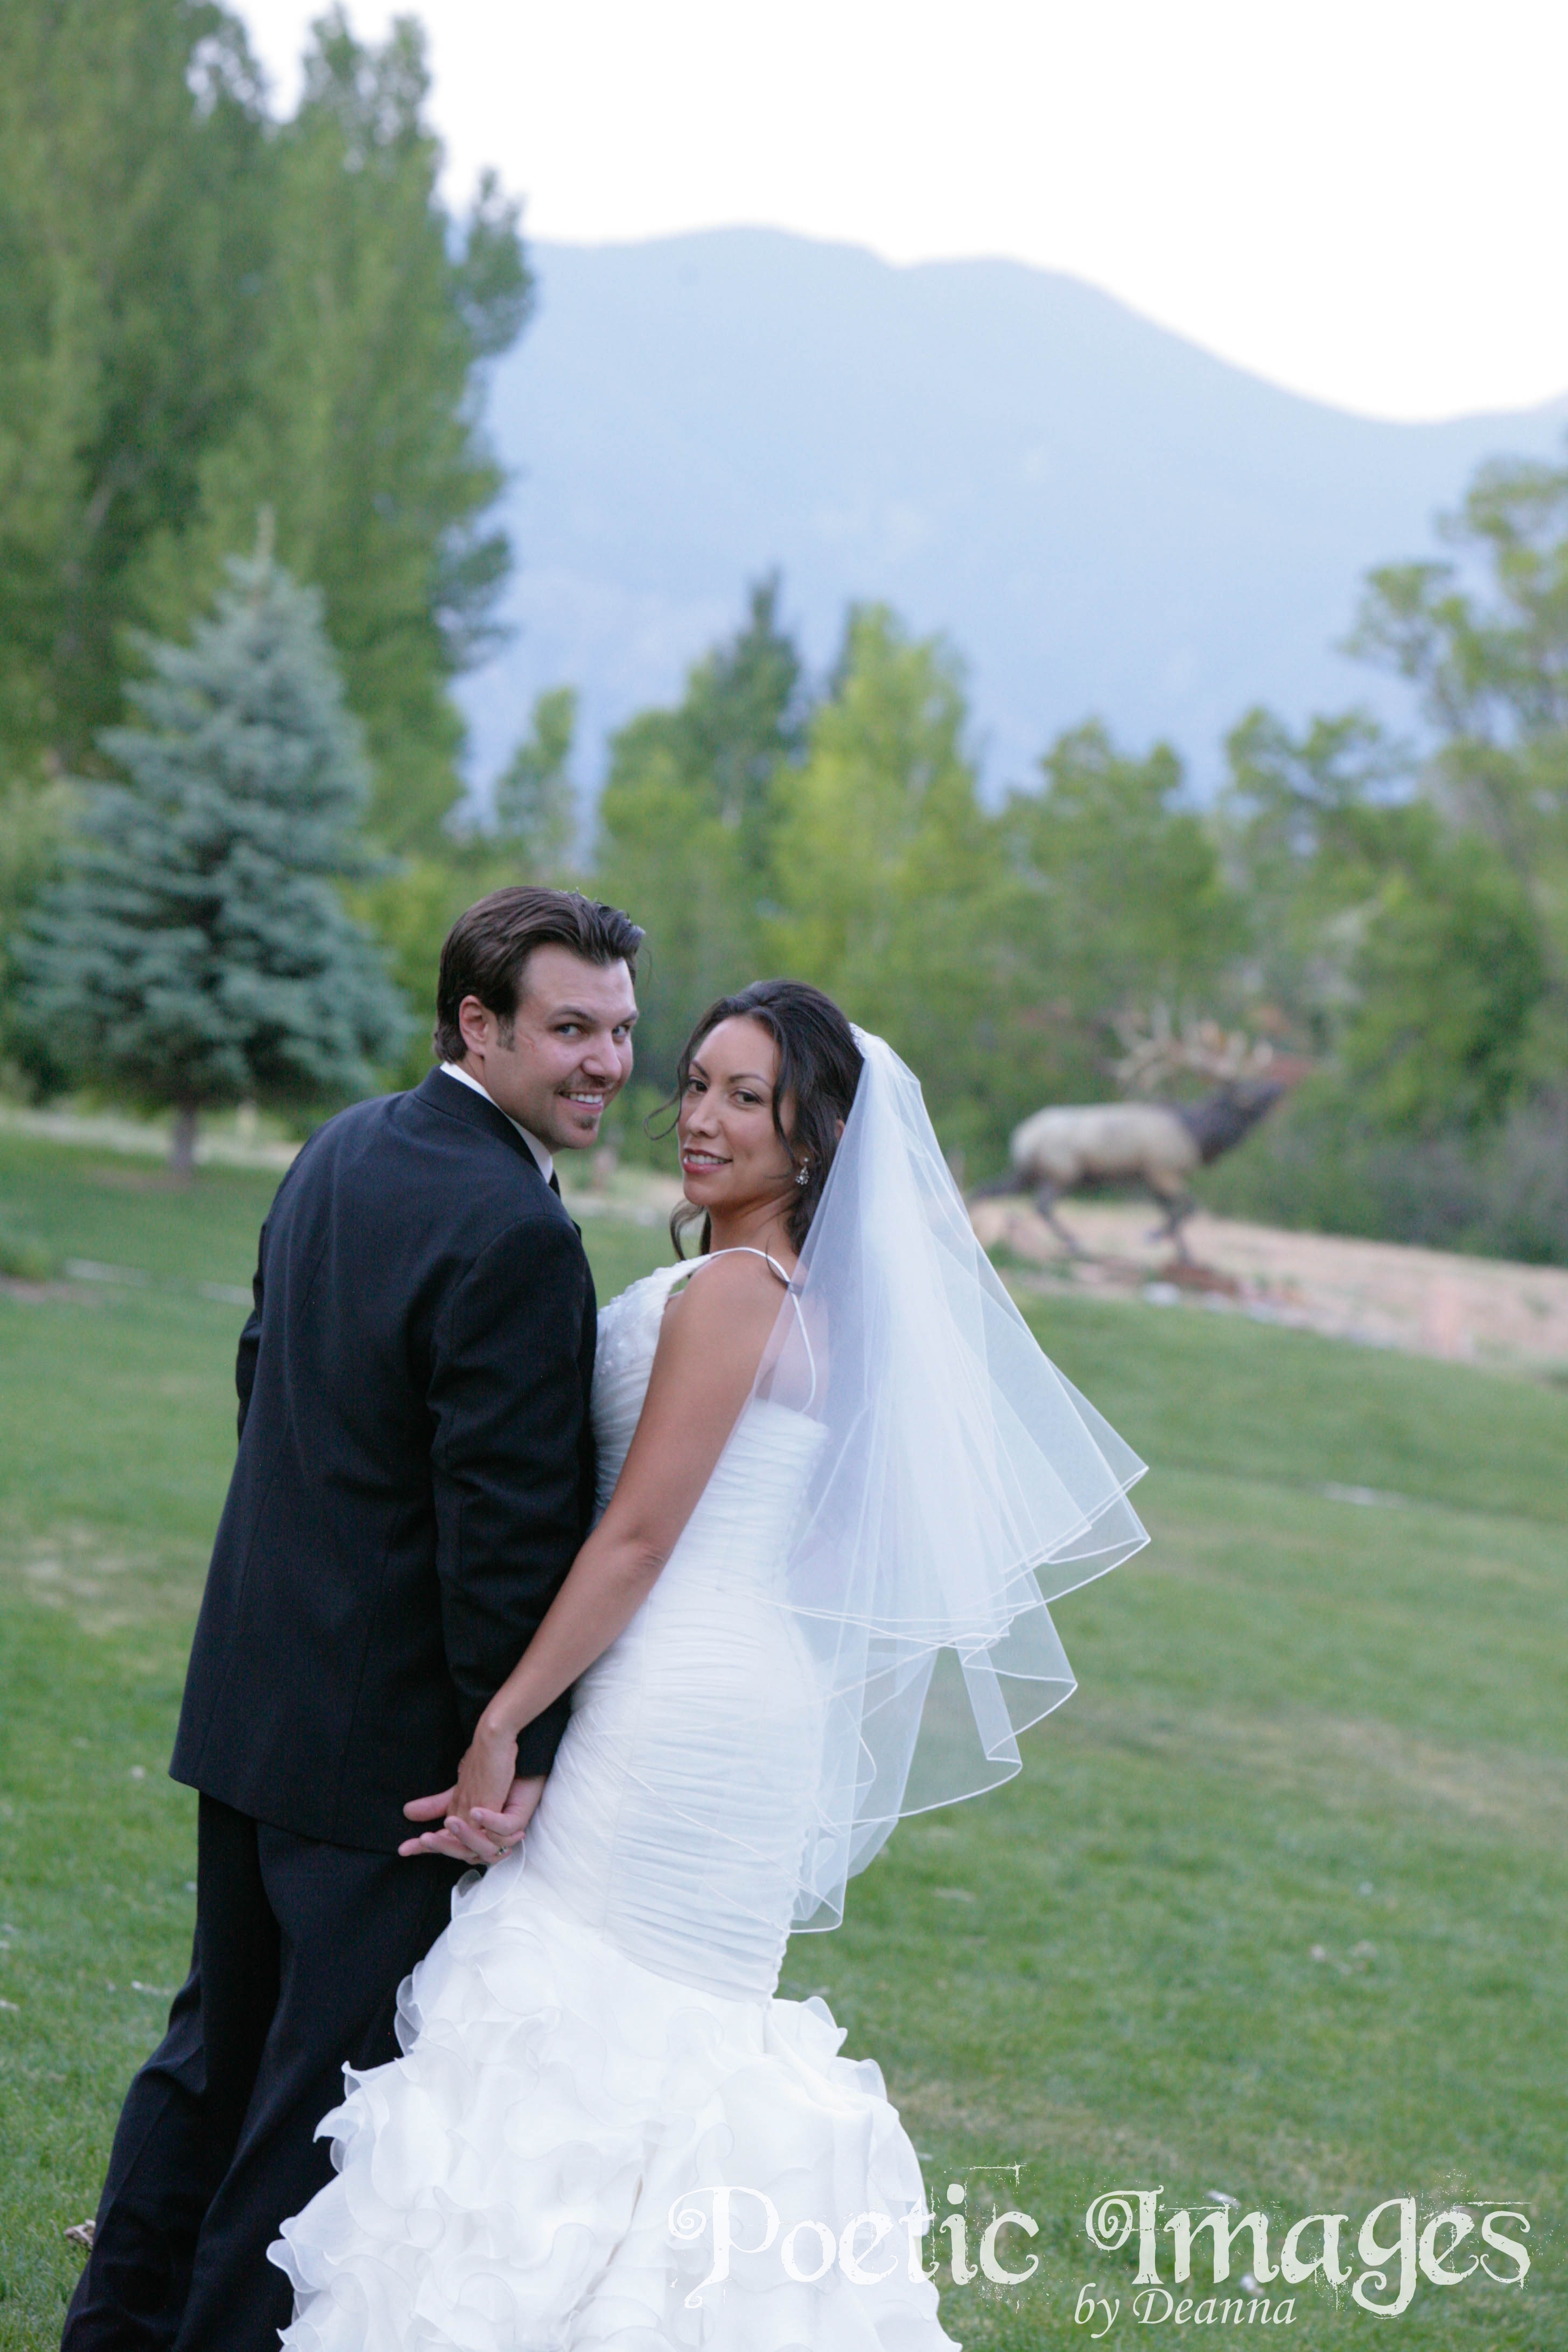 An El Monte Sagrado Wedding in Taos, NM